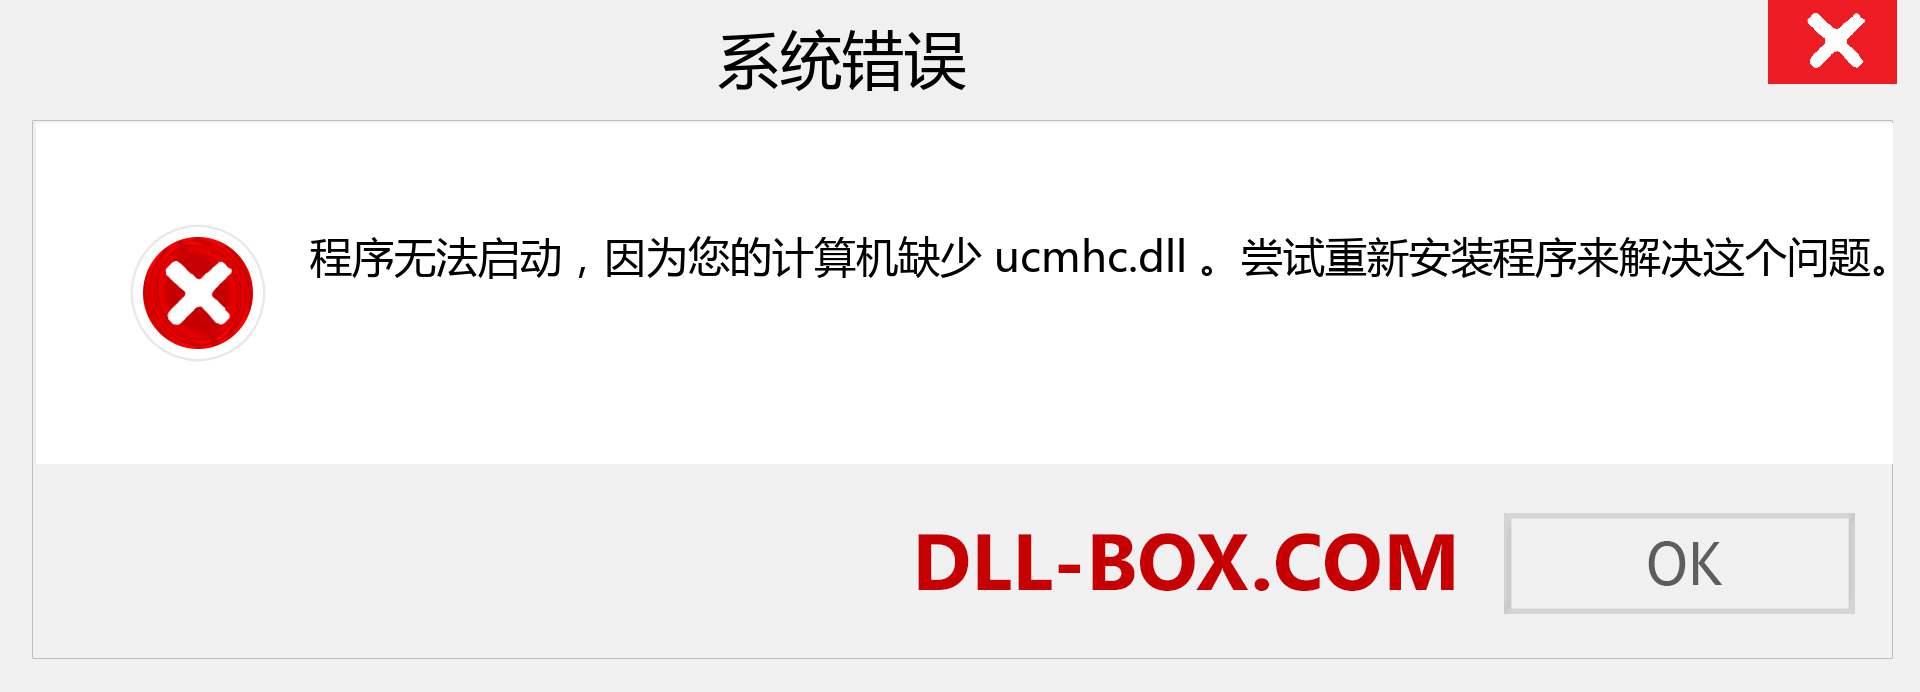 ucmhc.dll 文件丢失？。 适用于 Windows 7、8、10 的下载 - 修复 Windows、照片、图像上的 ucmhc dll 丢失错误